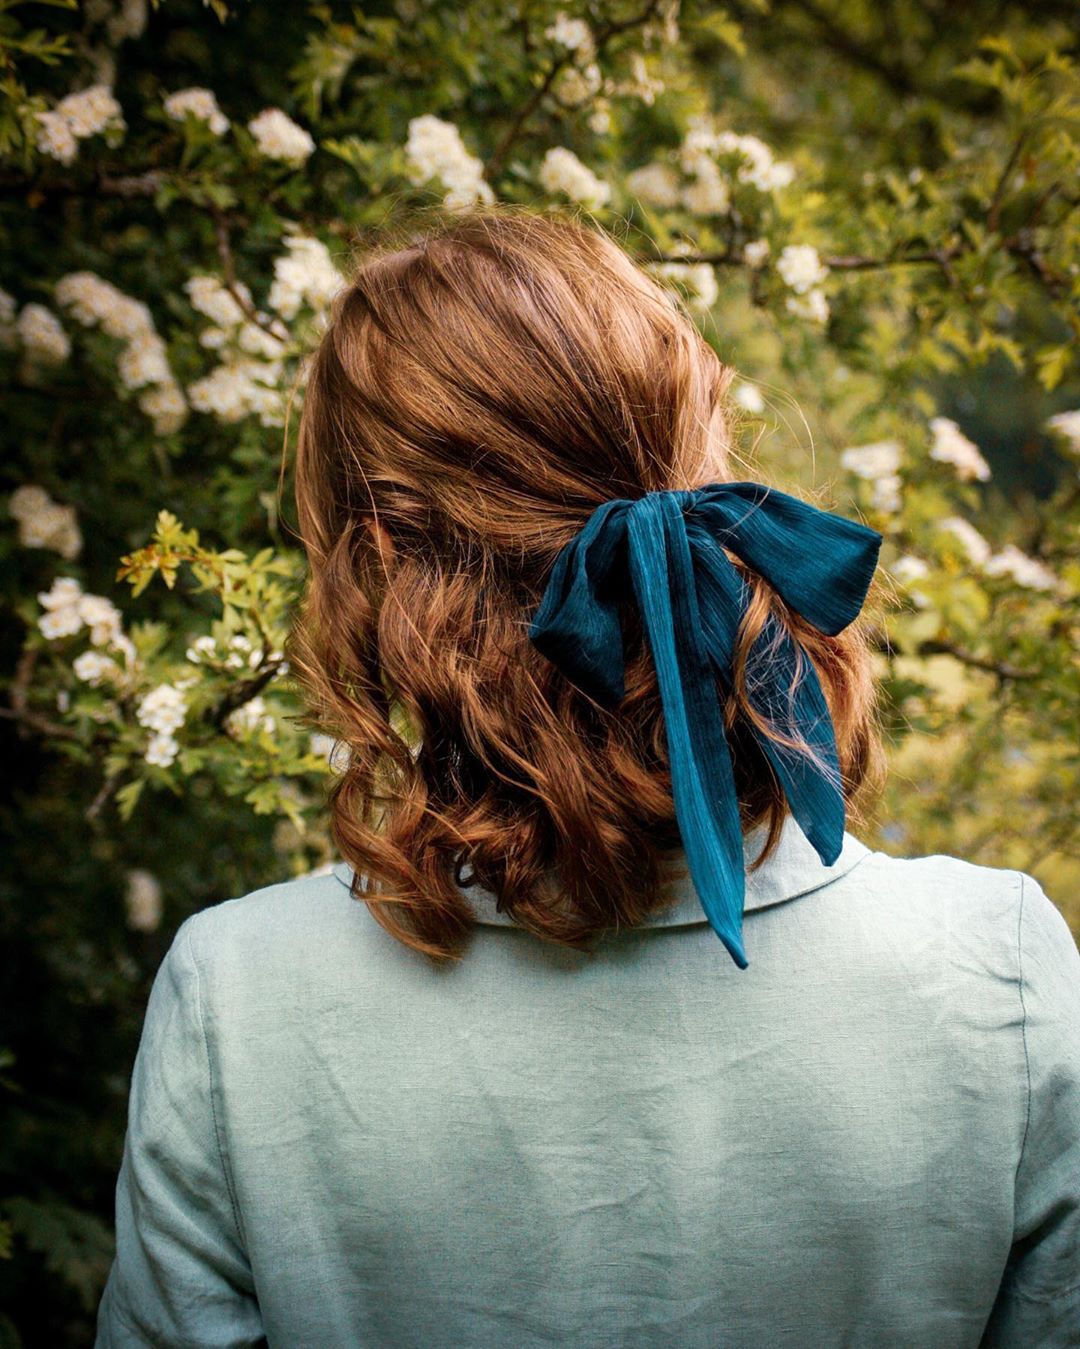 Ruy băng vải buộc tóc màu xanh phong cách thời trang Cottagecore